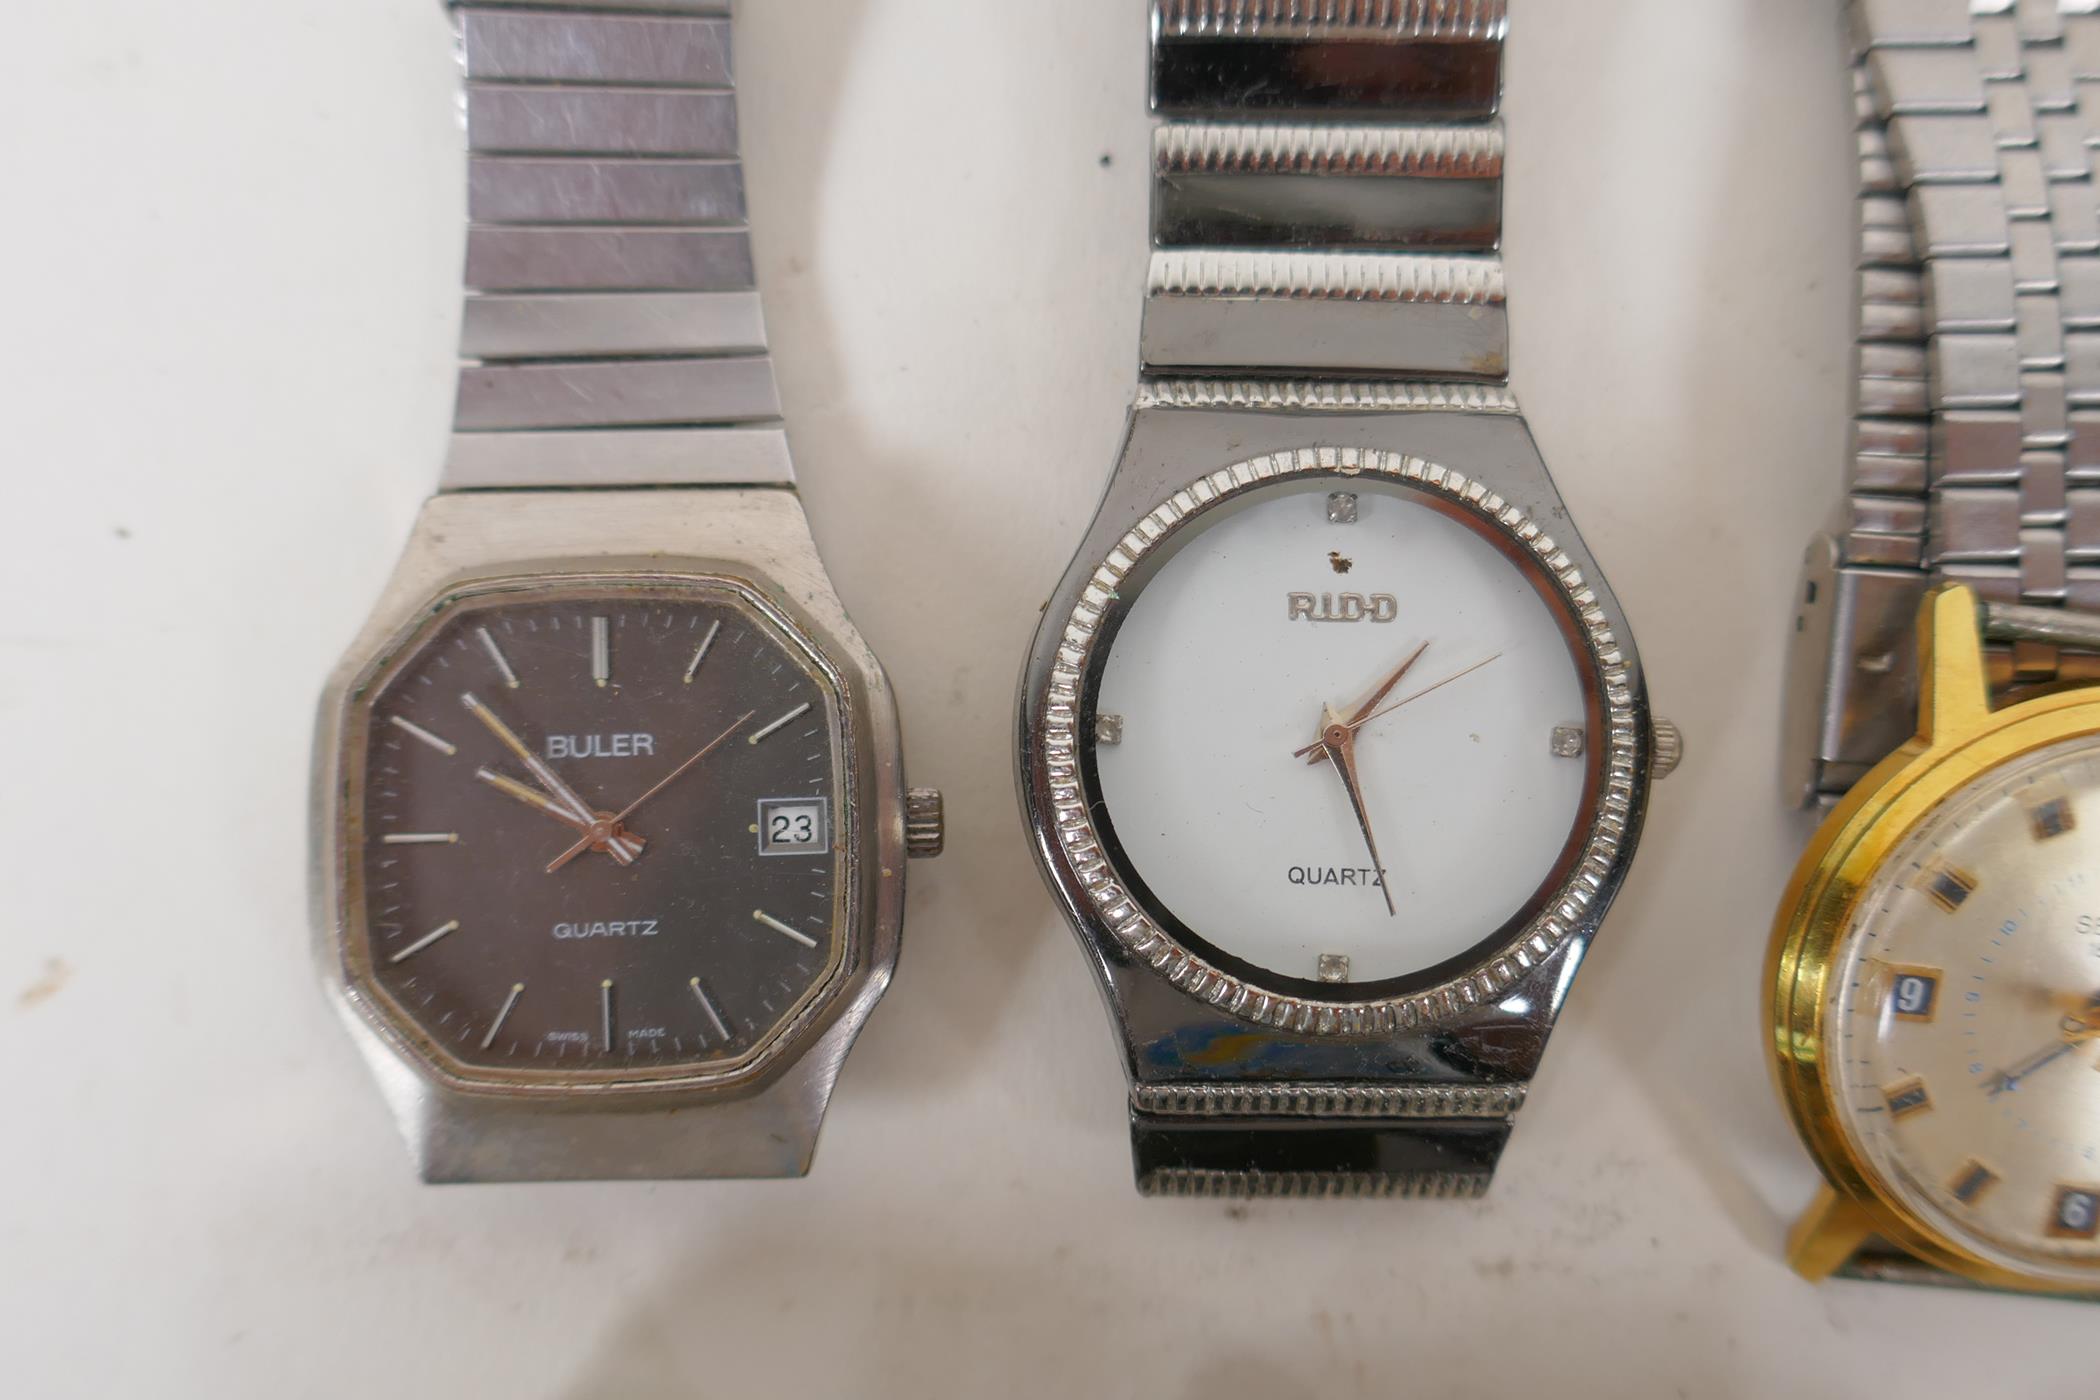 Twelve gentleman's wrist watches, to include Sekonda, Lorus, Ridd, Buler etc - Image 2 of 7